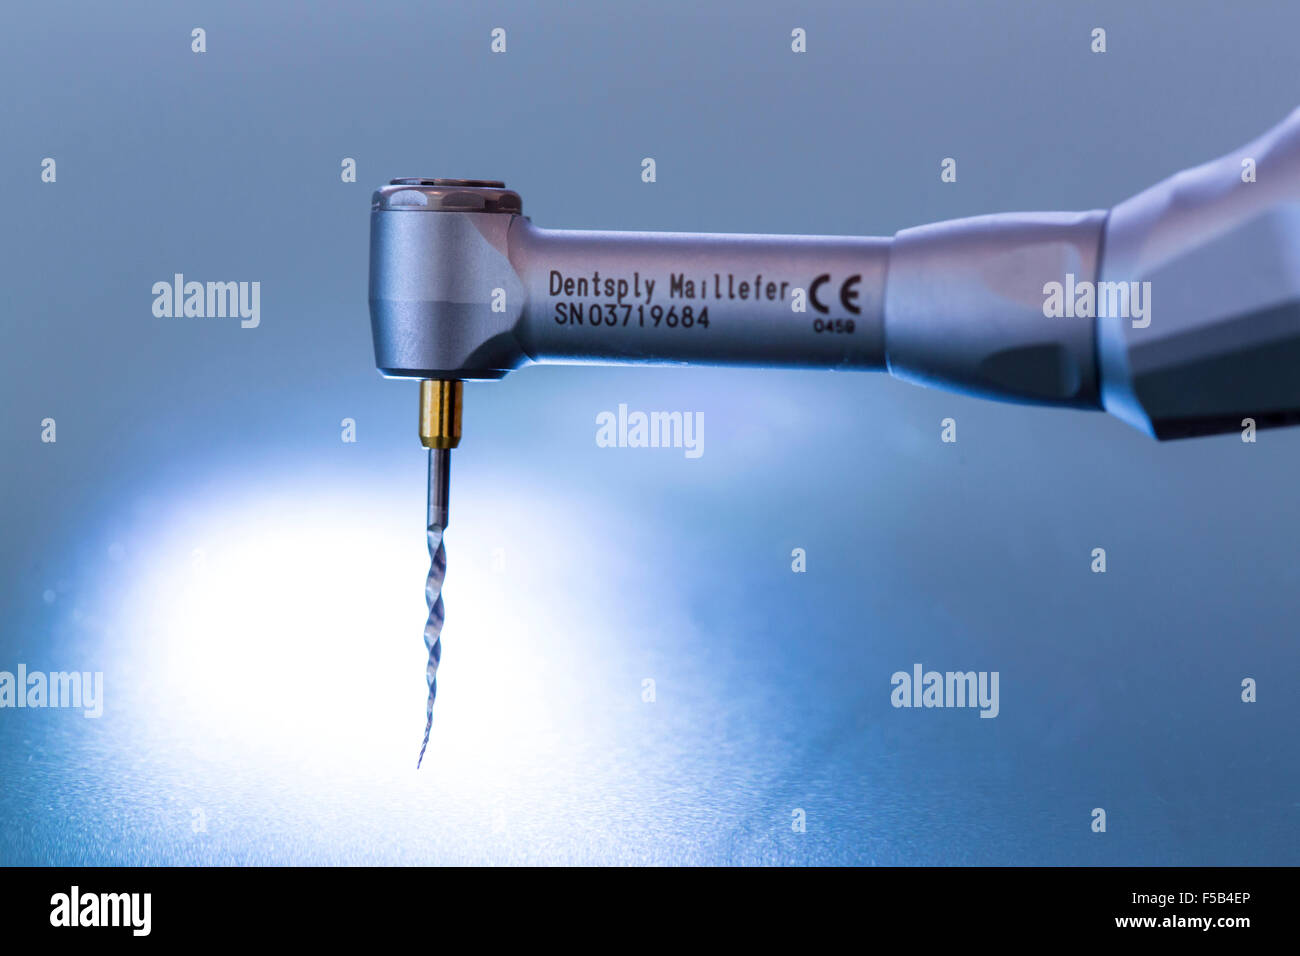 Dental drill immagini e fotografie stock ad alta risoluzione - Alamy